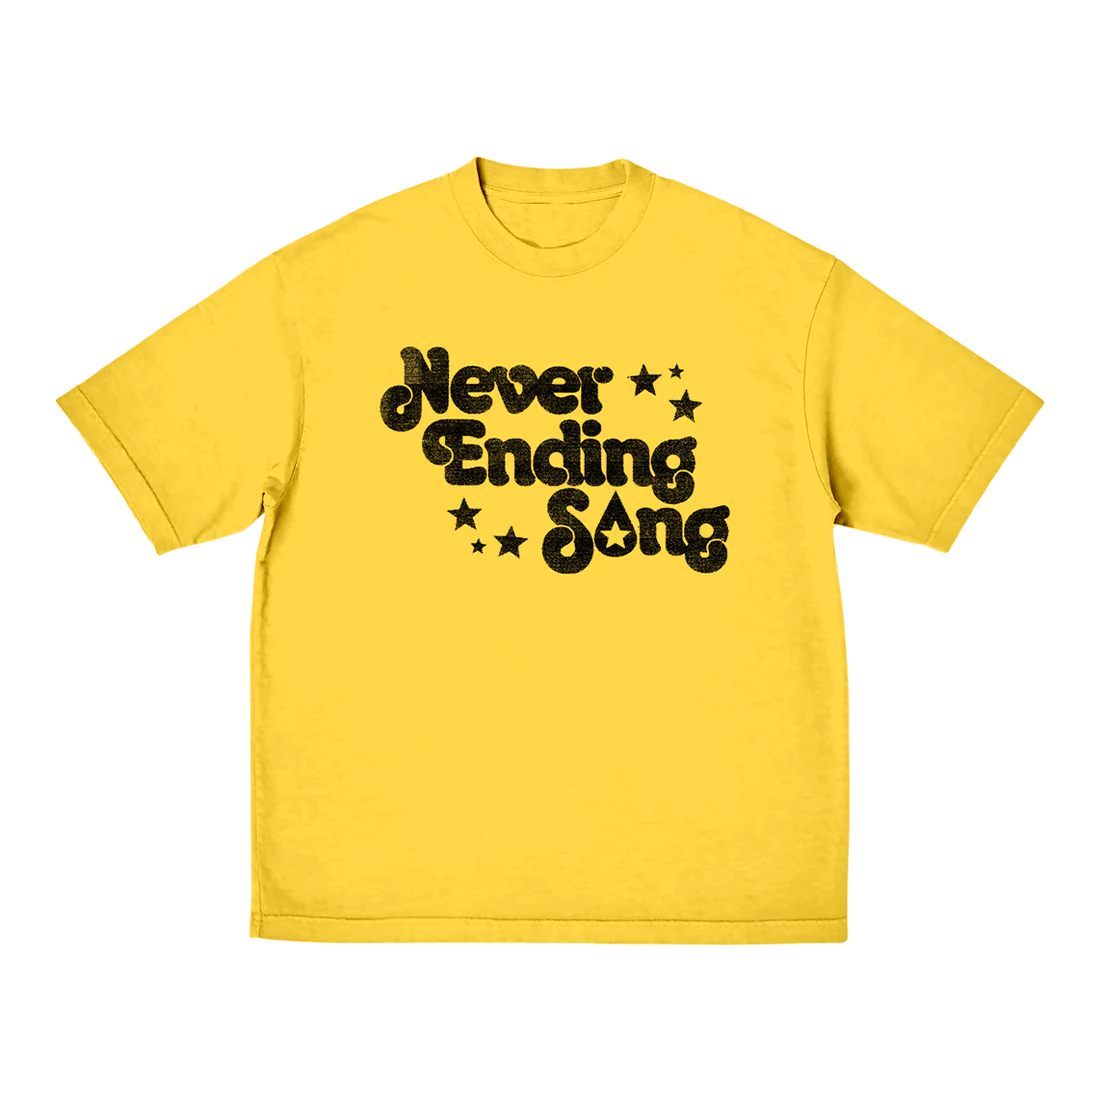 Conan Gray - Never Ending Song Tee